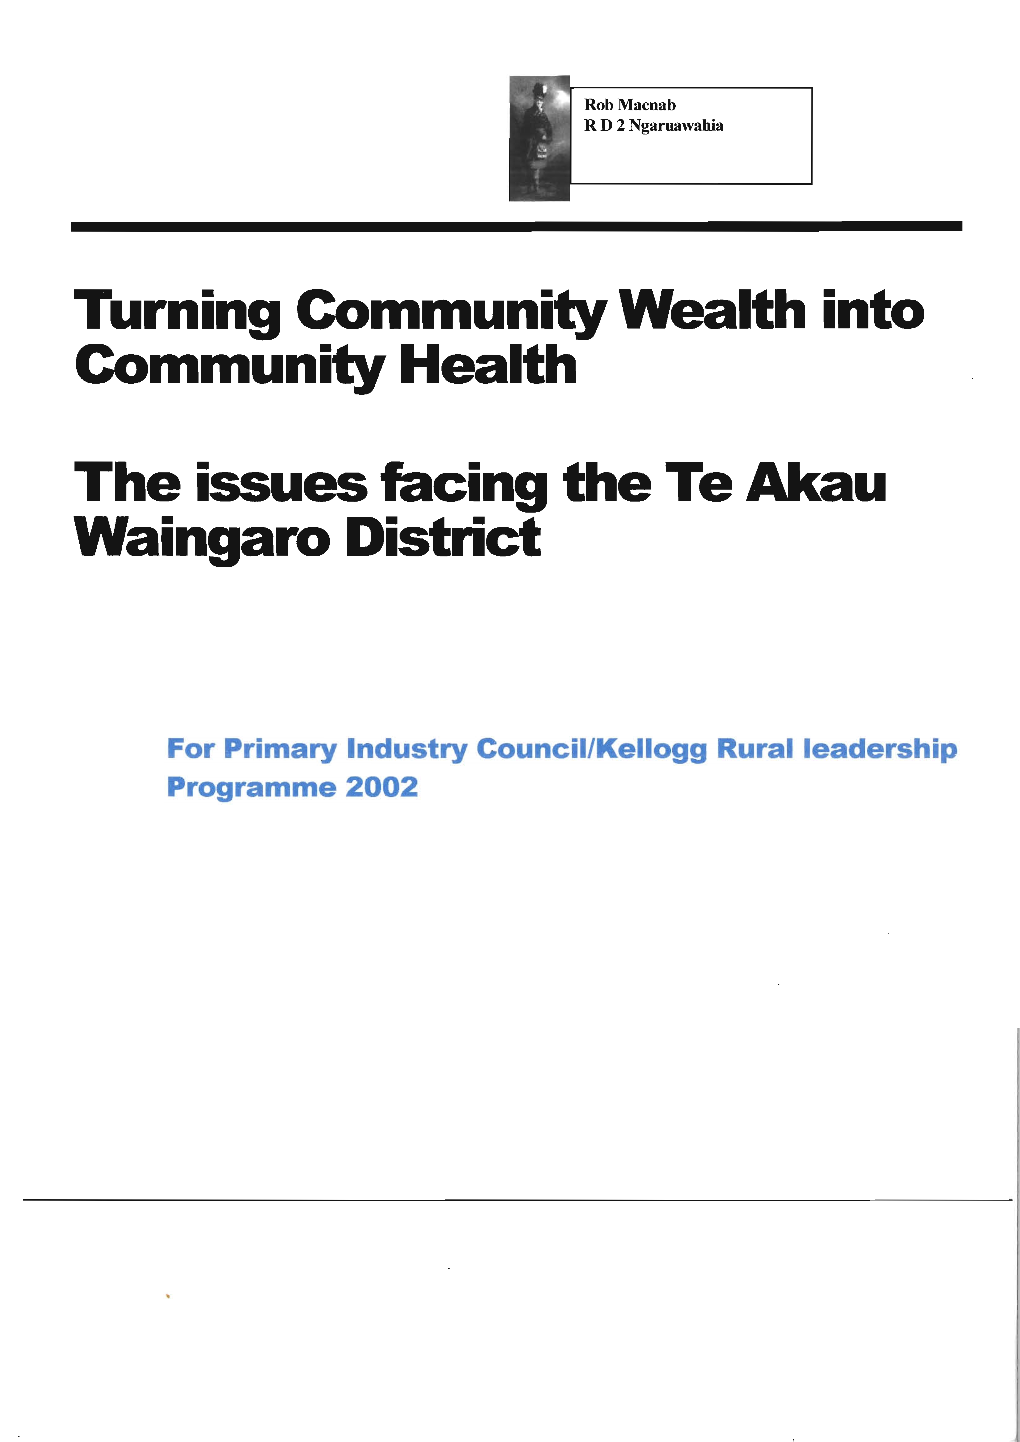 The Issues Facing the Te Akau Waingaro District